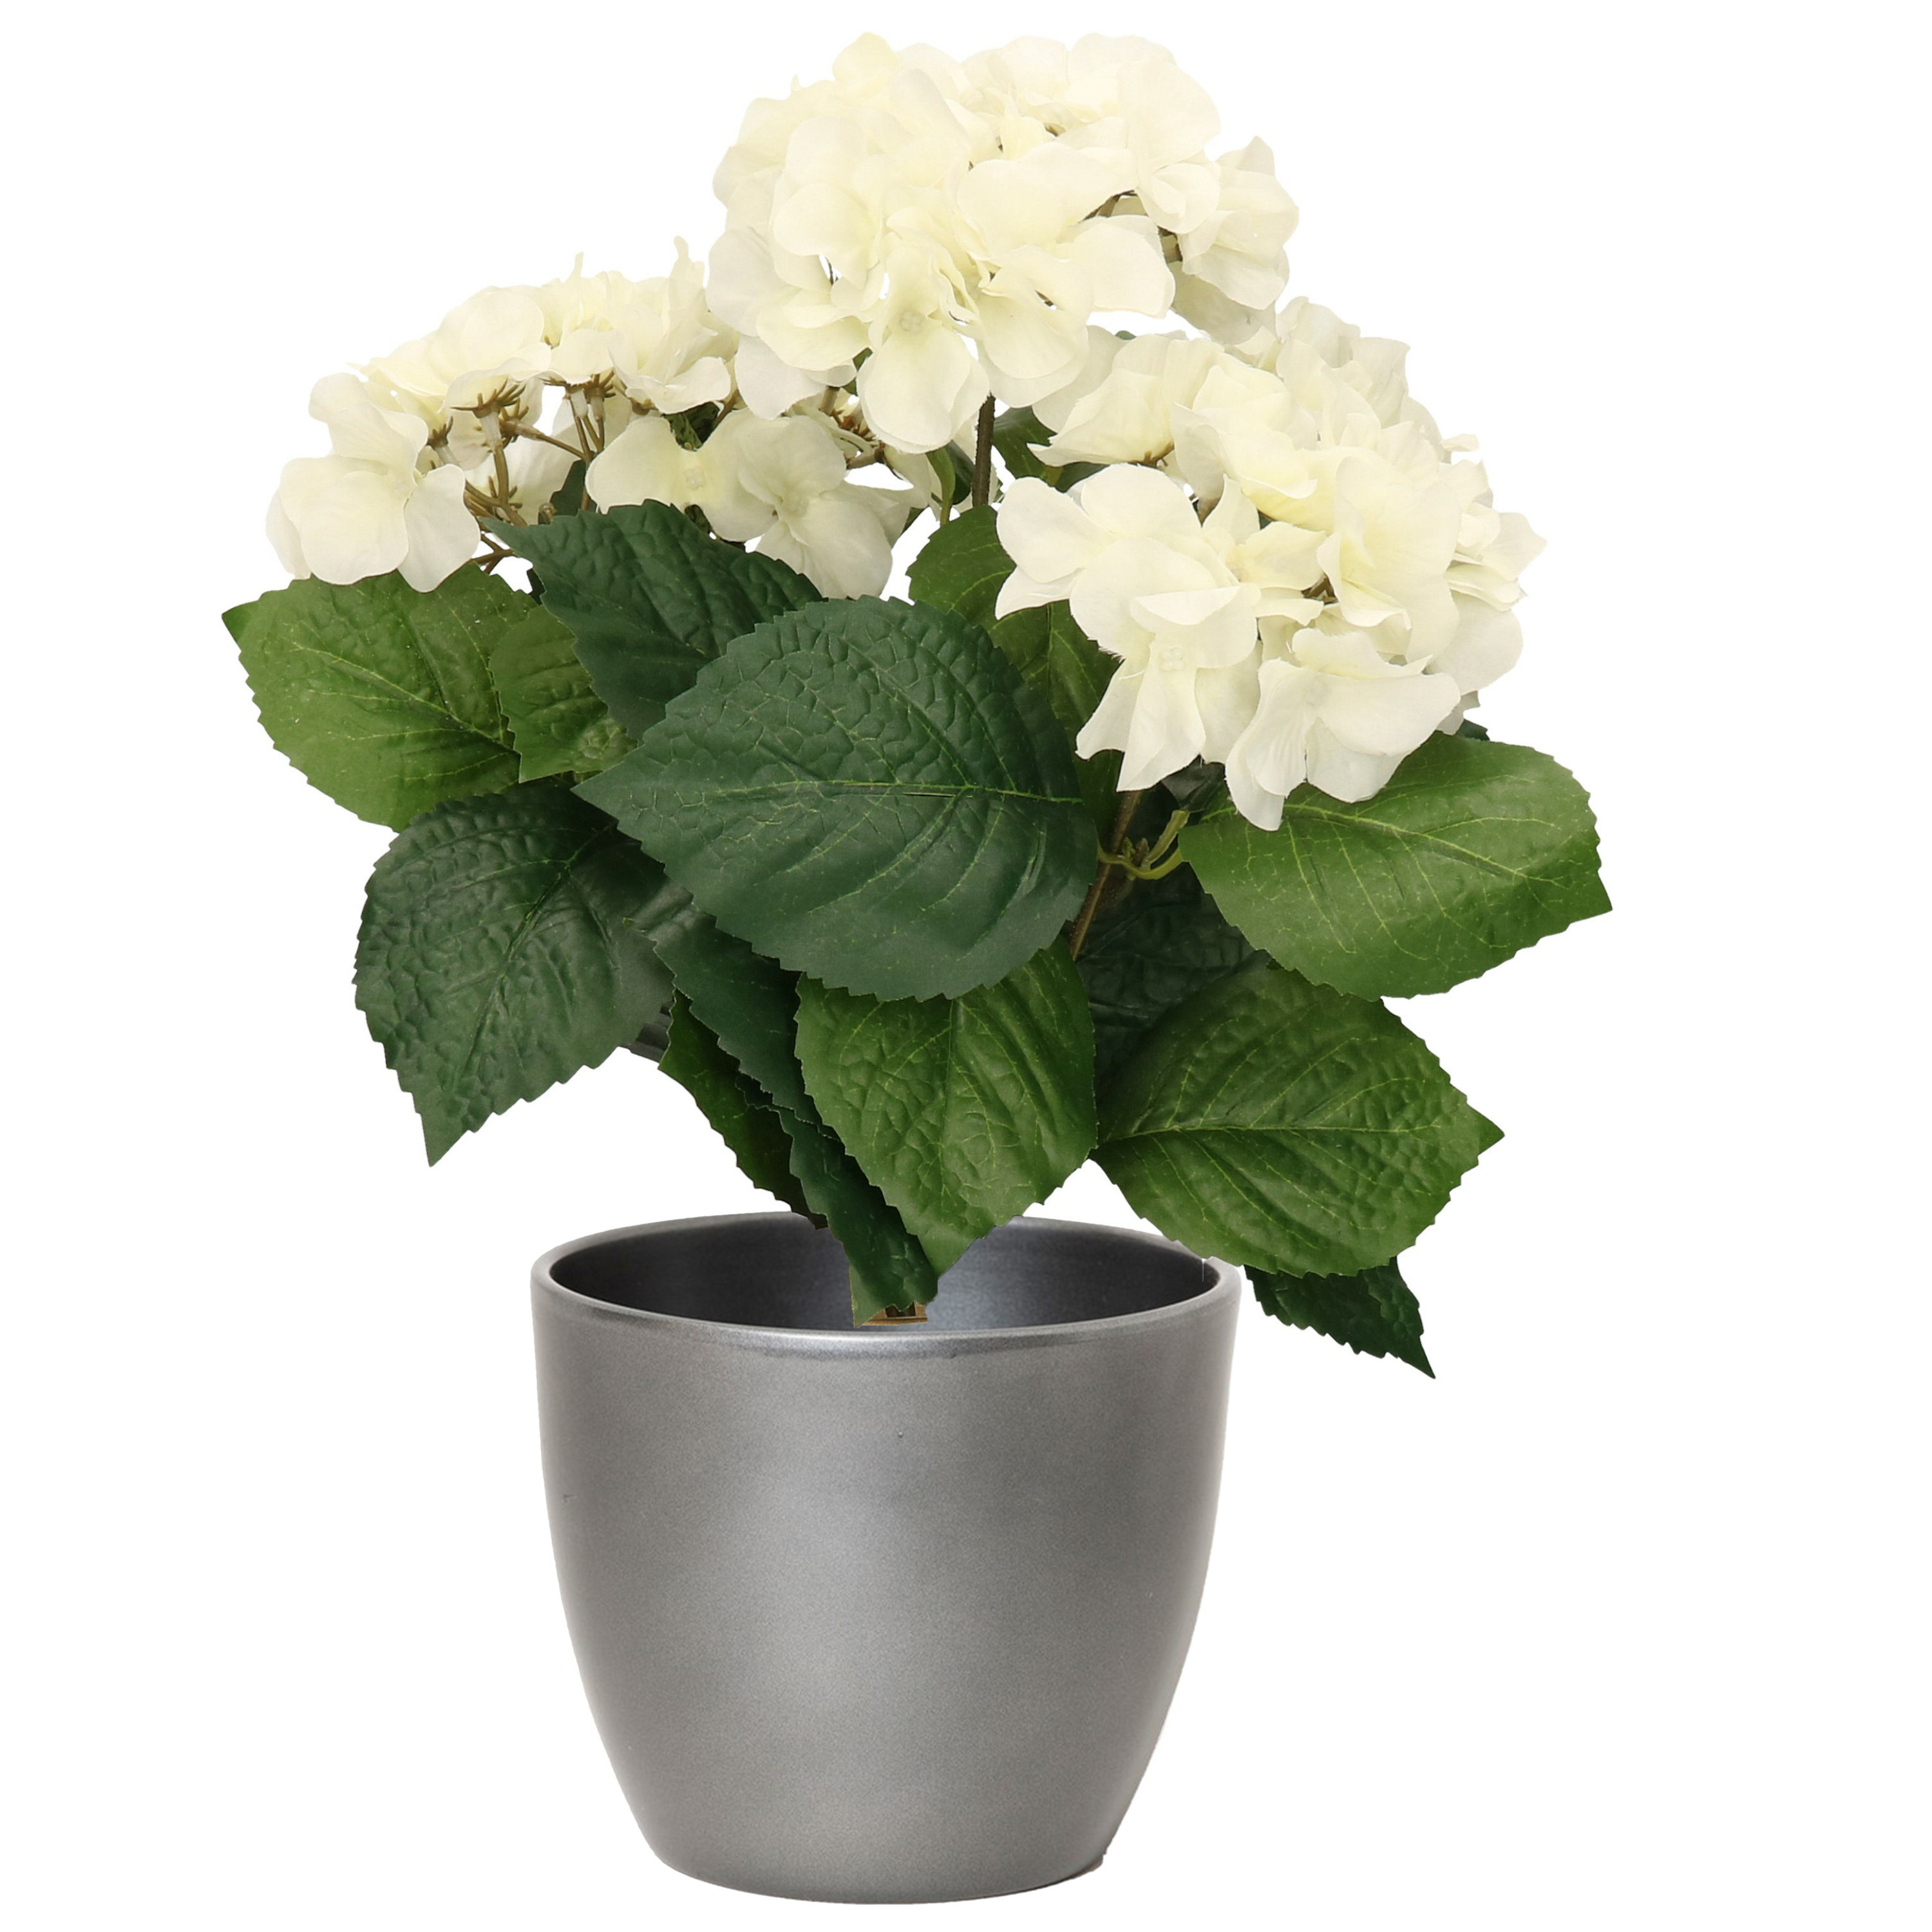 Hortensia kunstplant met bloemen wit in pot zilver metallic 40 cm hoog